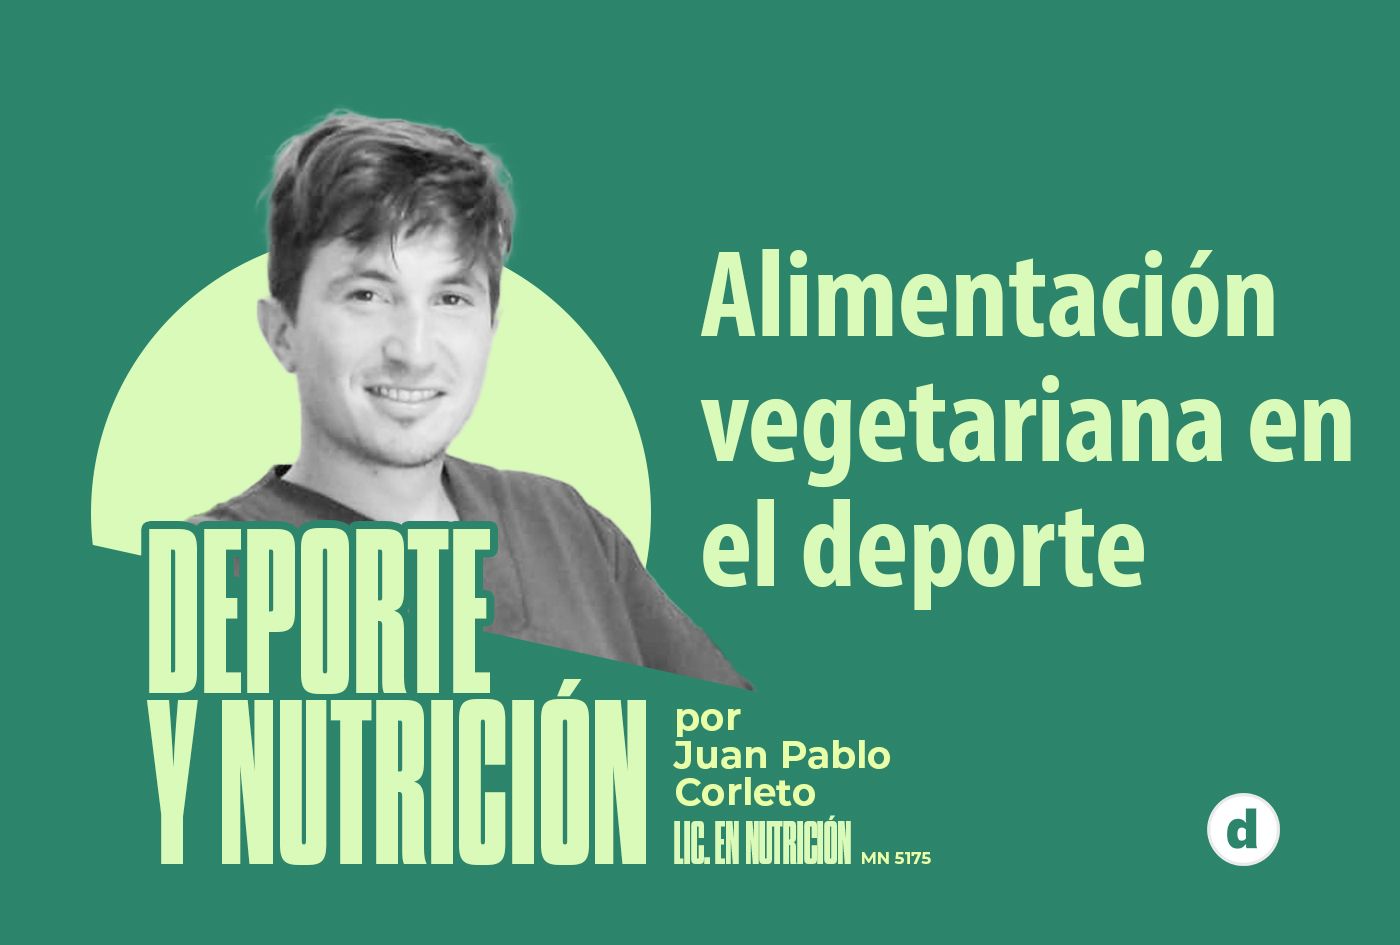 La columna de Juan Pablo Corleto: “Alimentación vegetariana en el deporte”